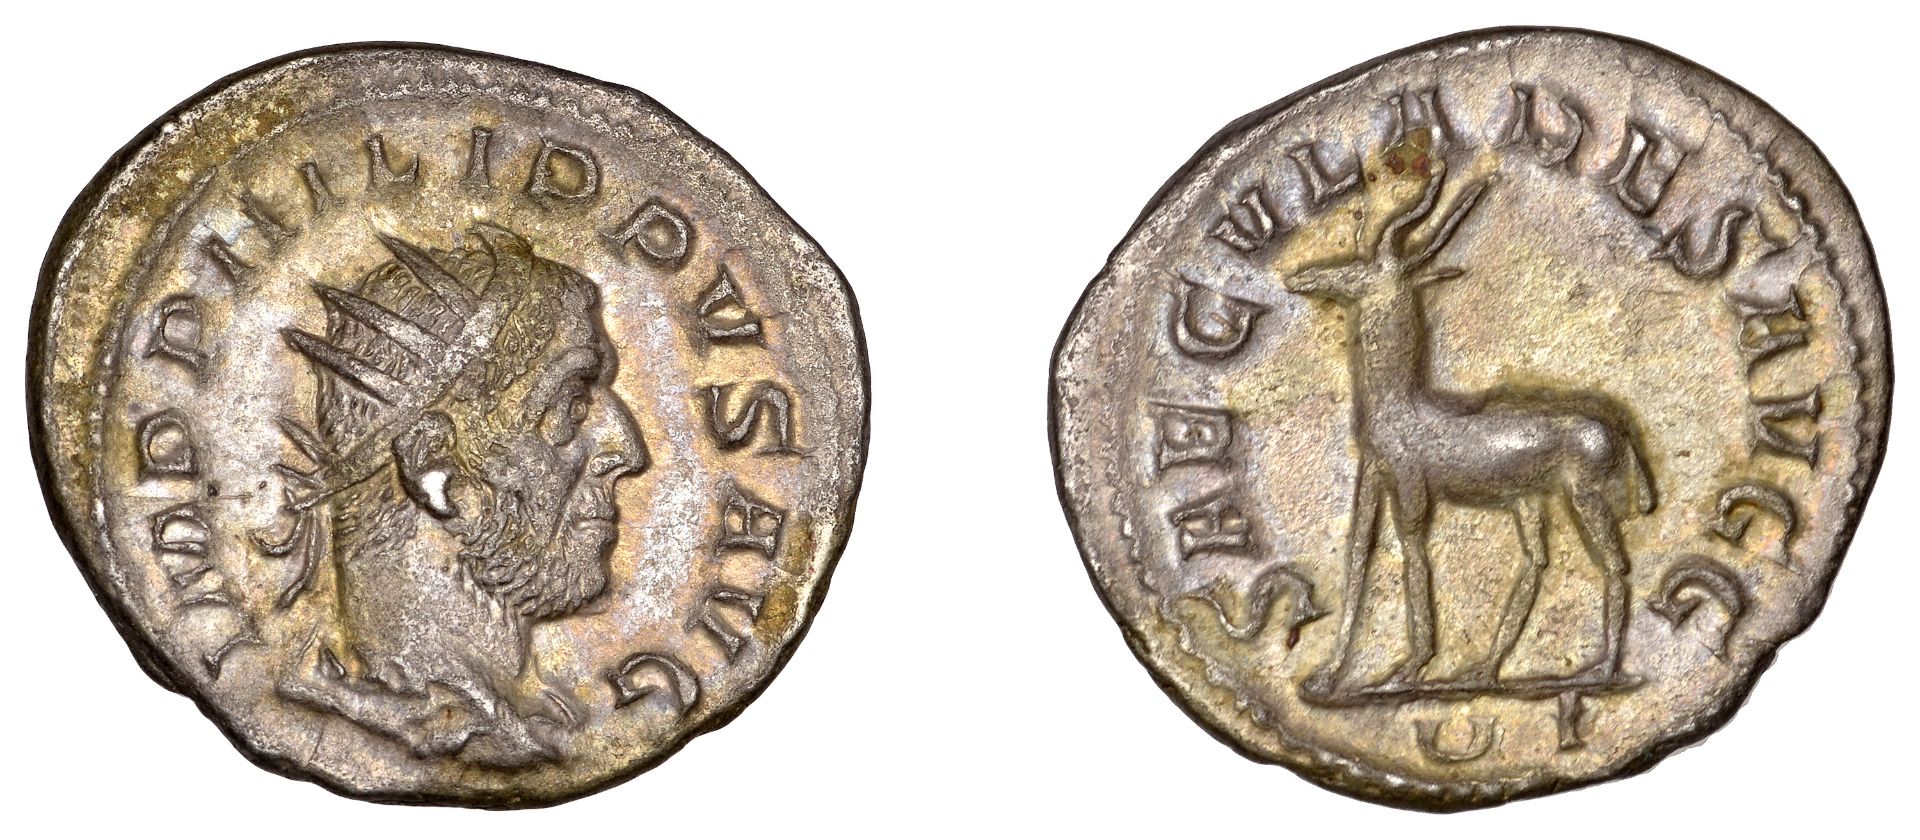 Philip I, Antoninianus, 248, radiate bust right, rev. saecvlares avgg, antelope standing lef...